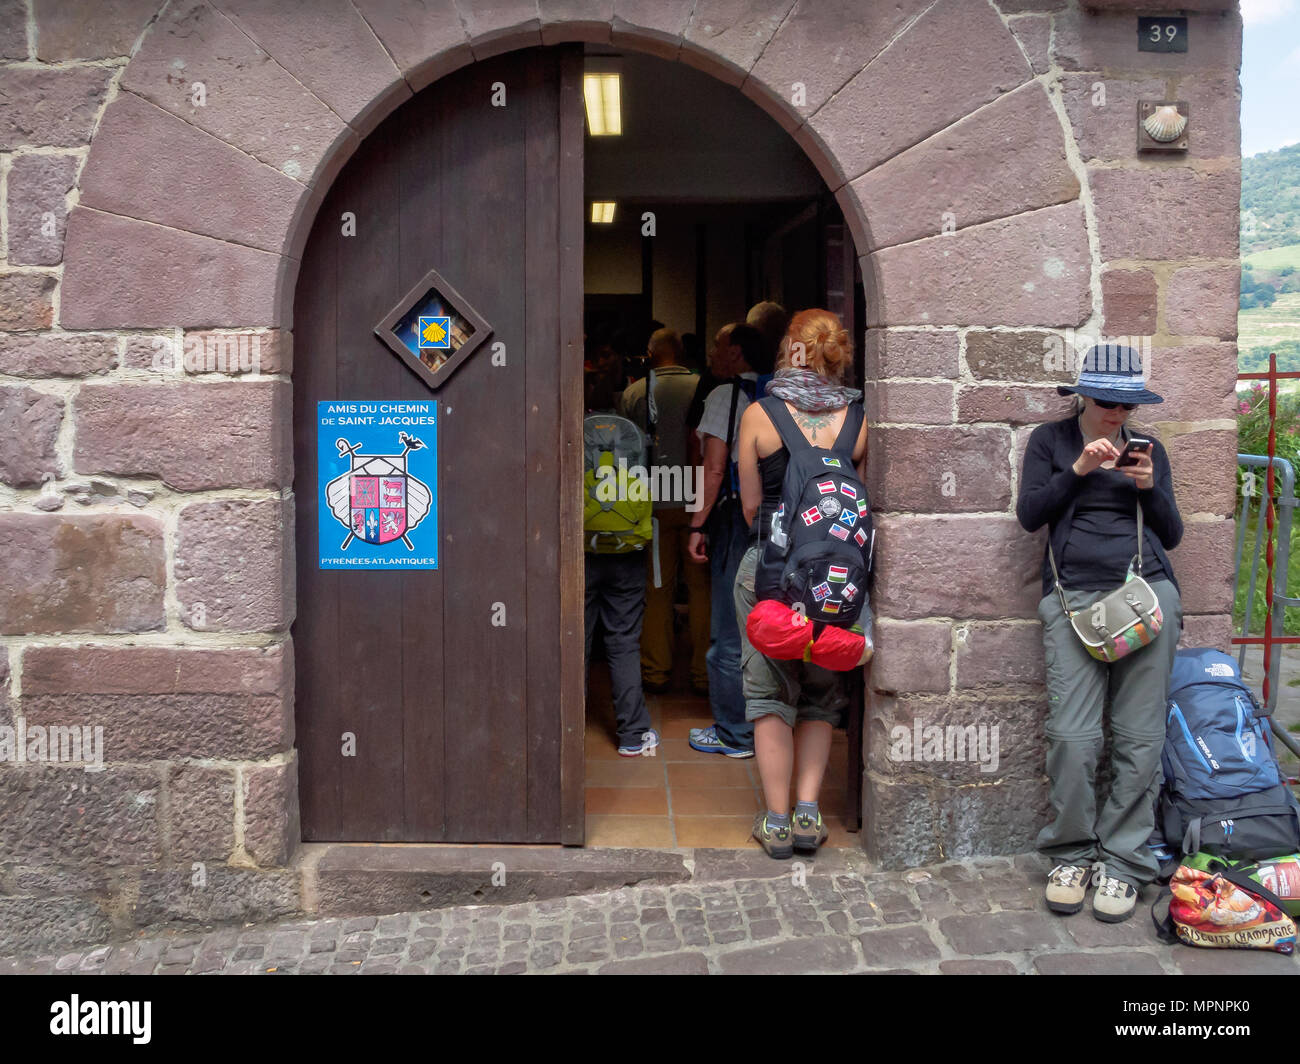 Bureau des pèlerins est où les pèlerins à la française (Camino Frances) à Santiago de Compostela peuvent s'inscrire et obtenir leur passeport pèlerins Banque D'Images